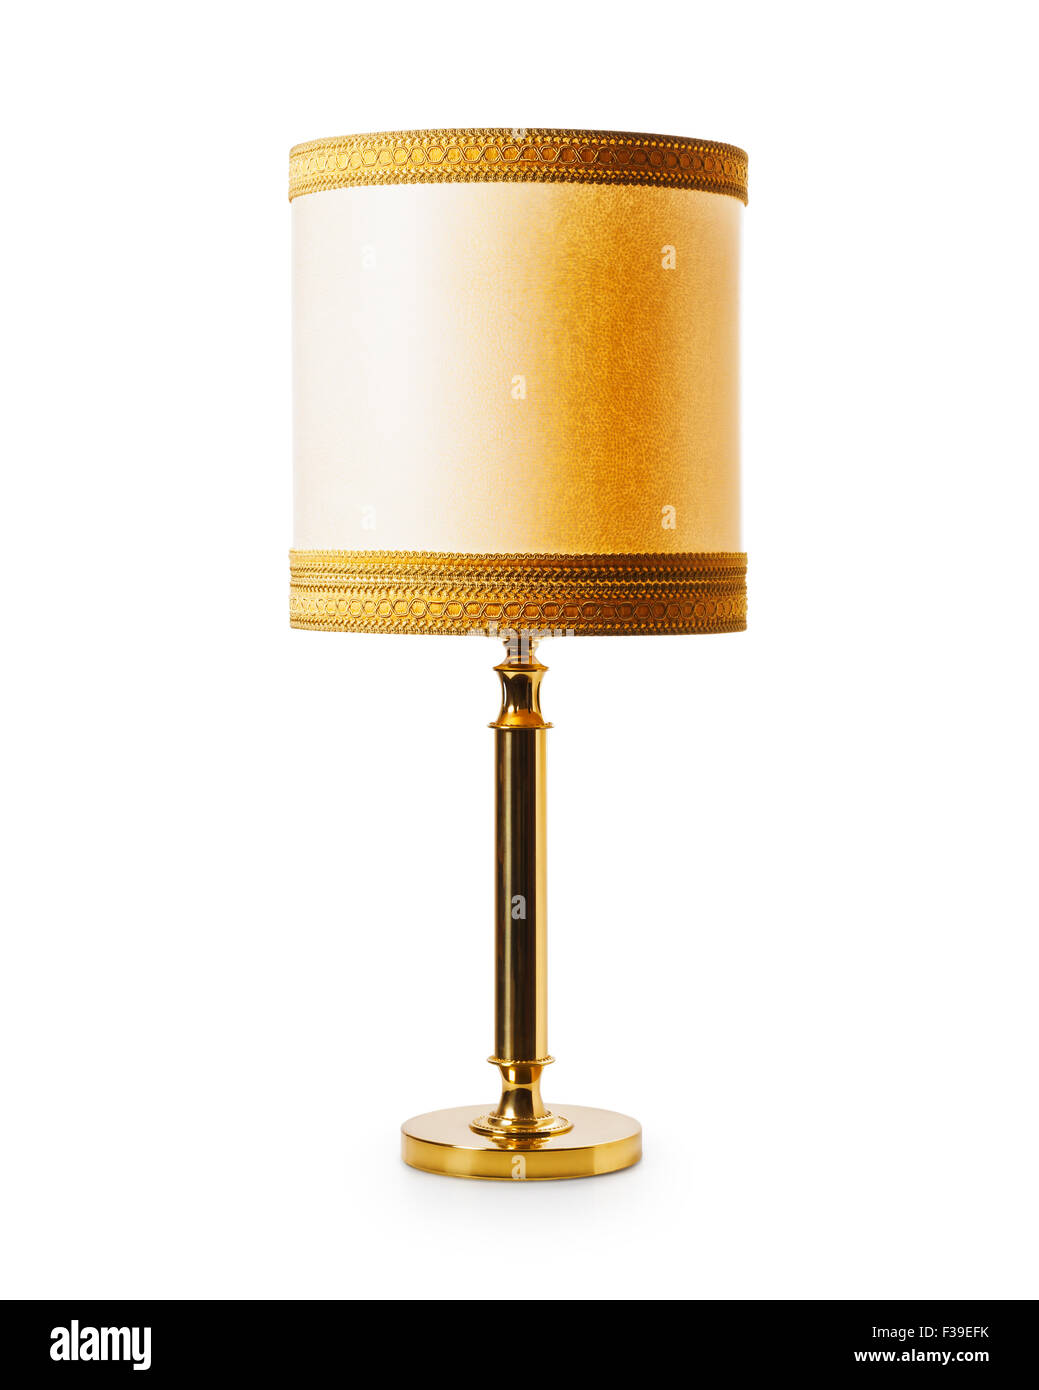 Vieux classique lampe de table ou sol isolé sur fond blanc. Style rétro. Objet Avec clipping path Banque D'Images